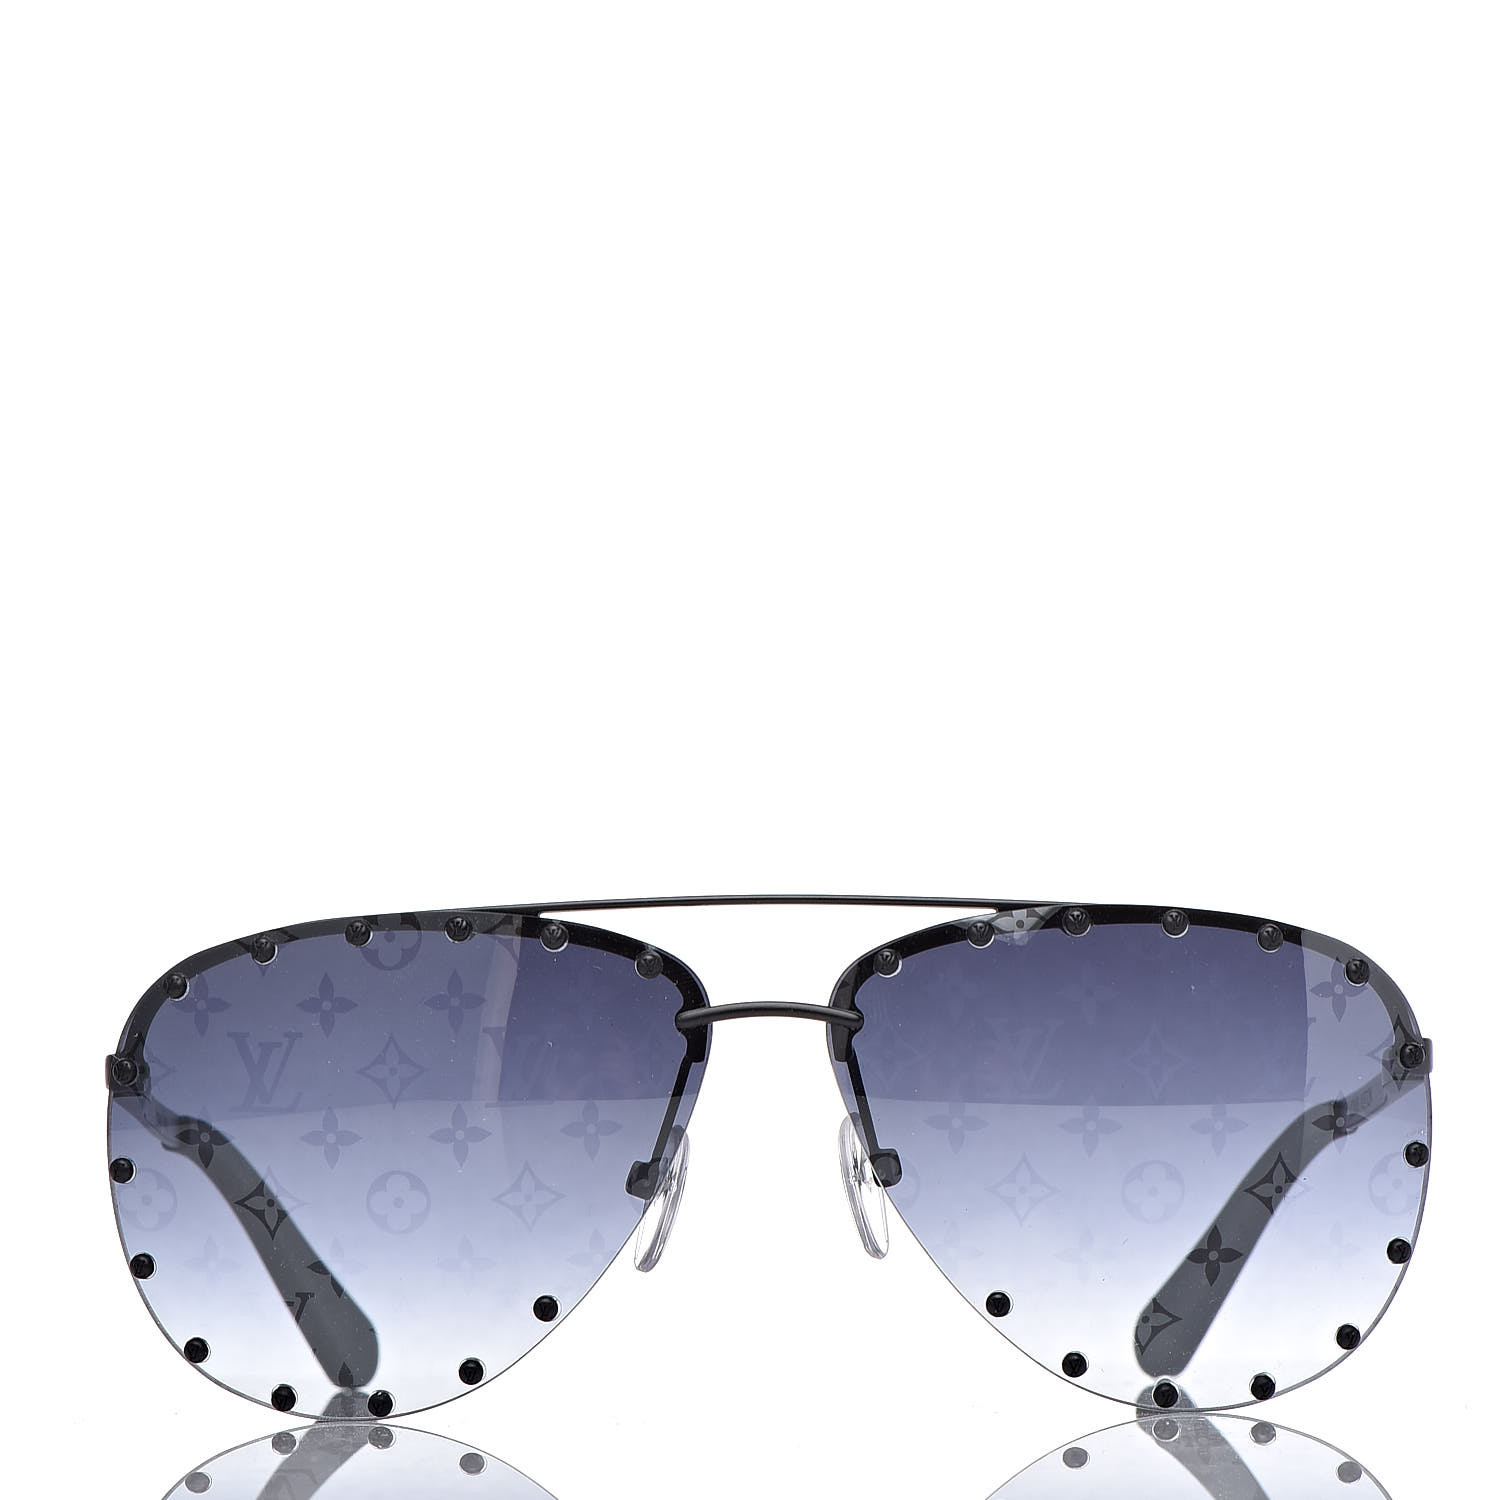 Louis Vuitton My Monogram Square-frame Acetate Sunglasses in Black